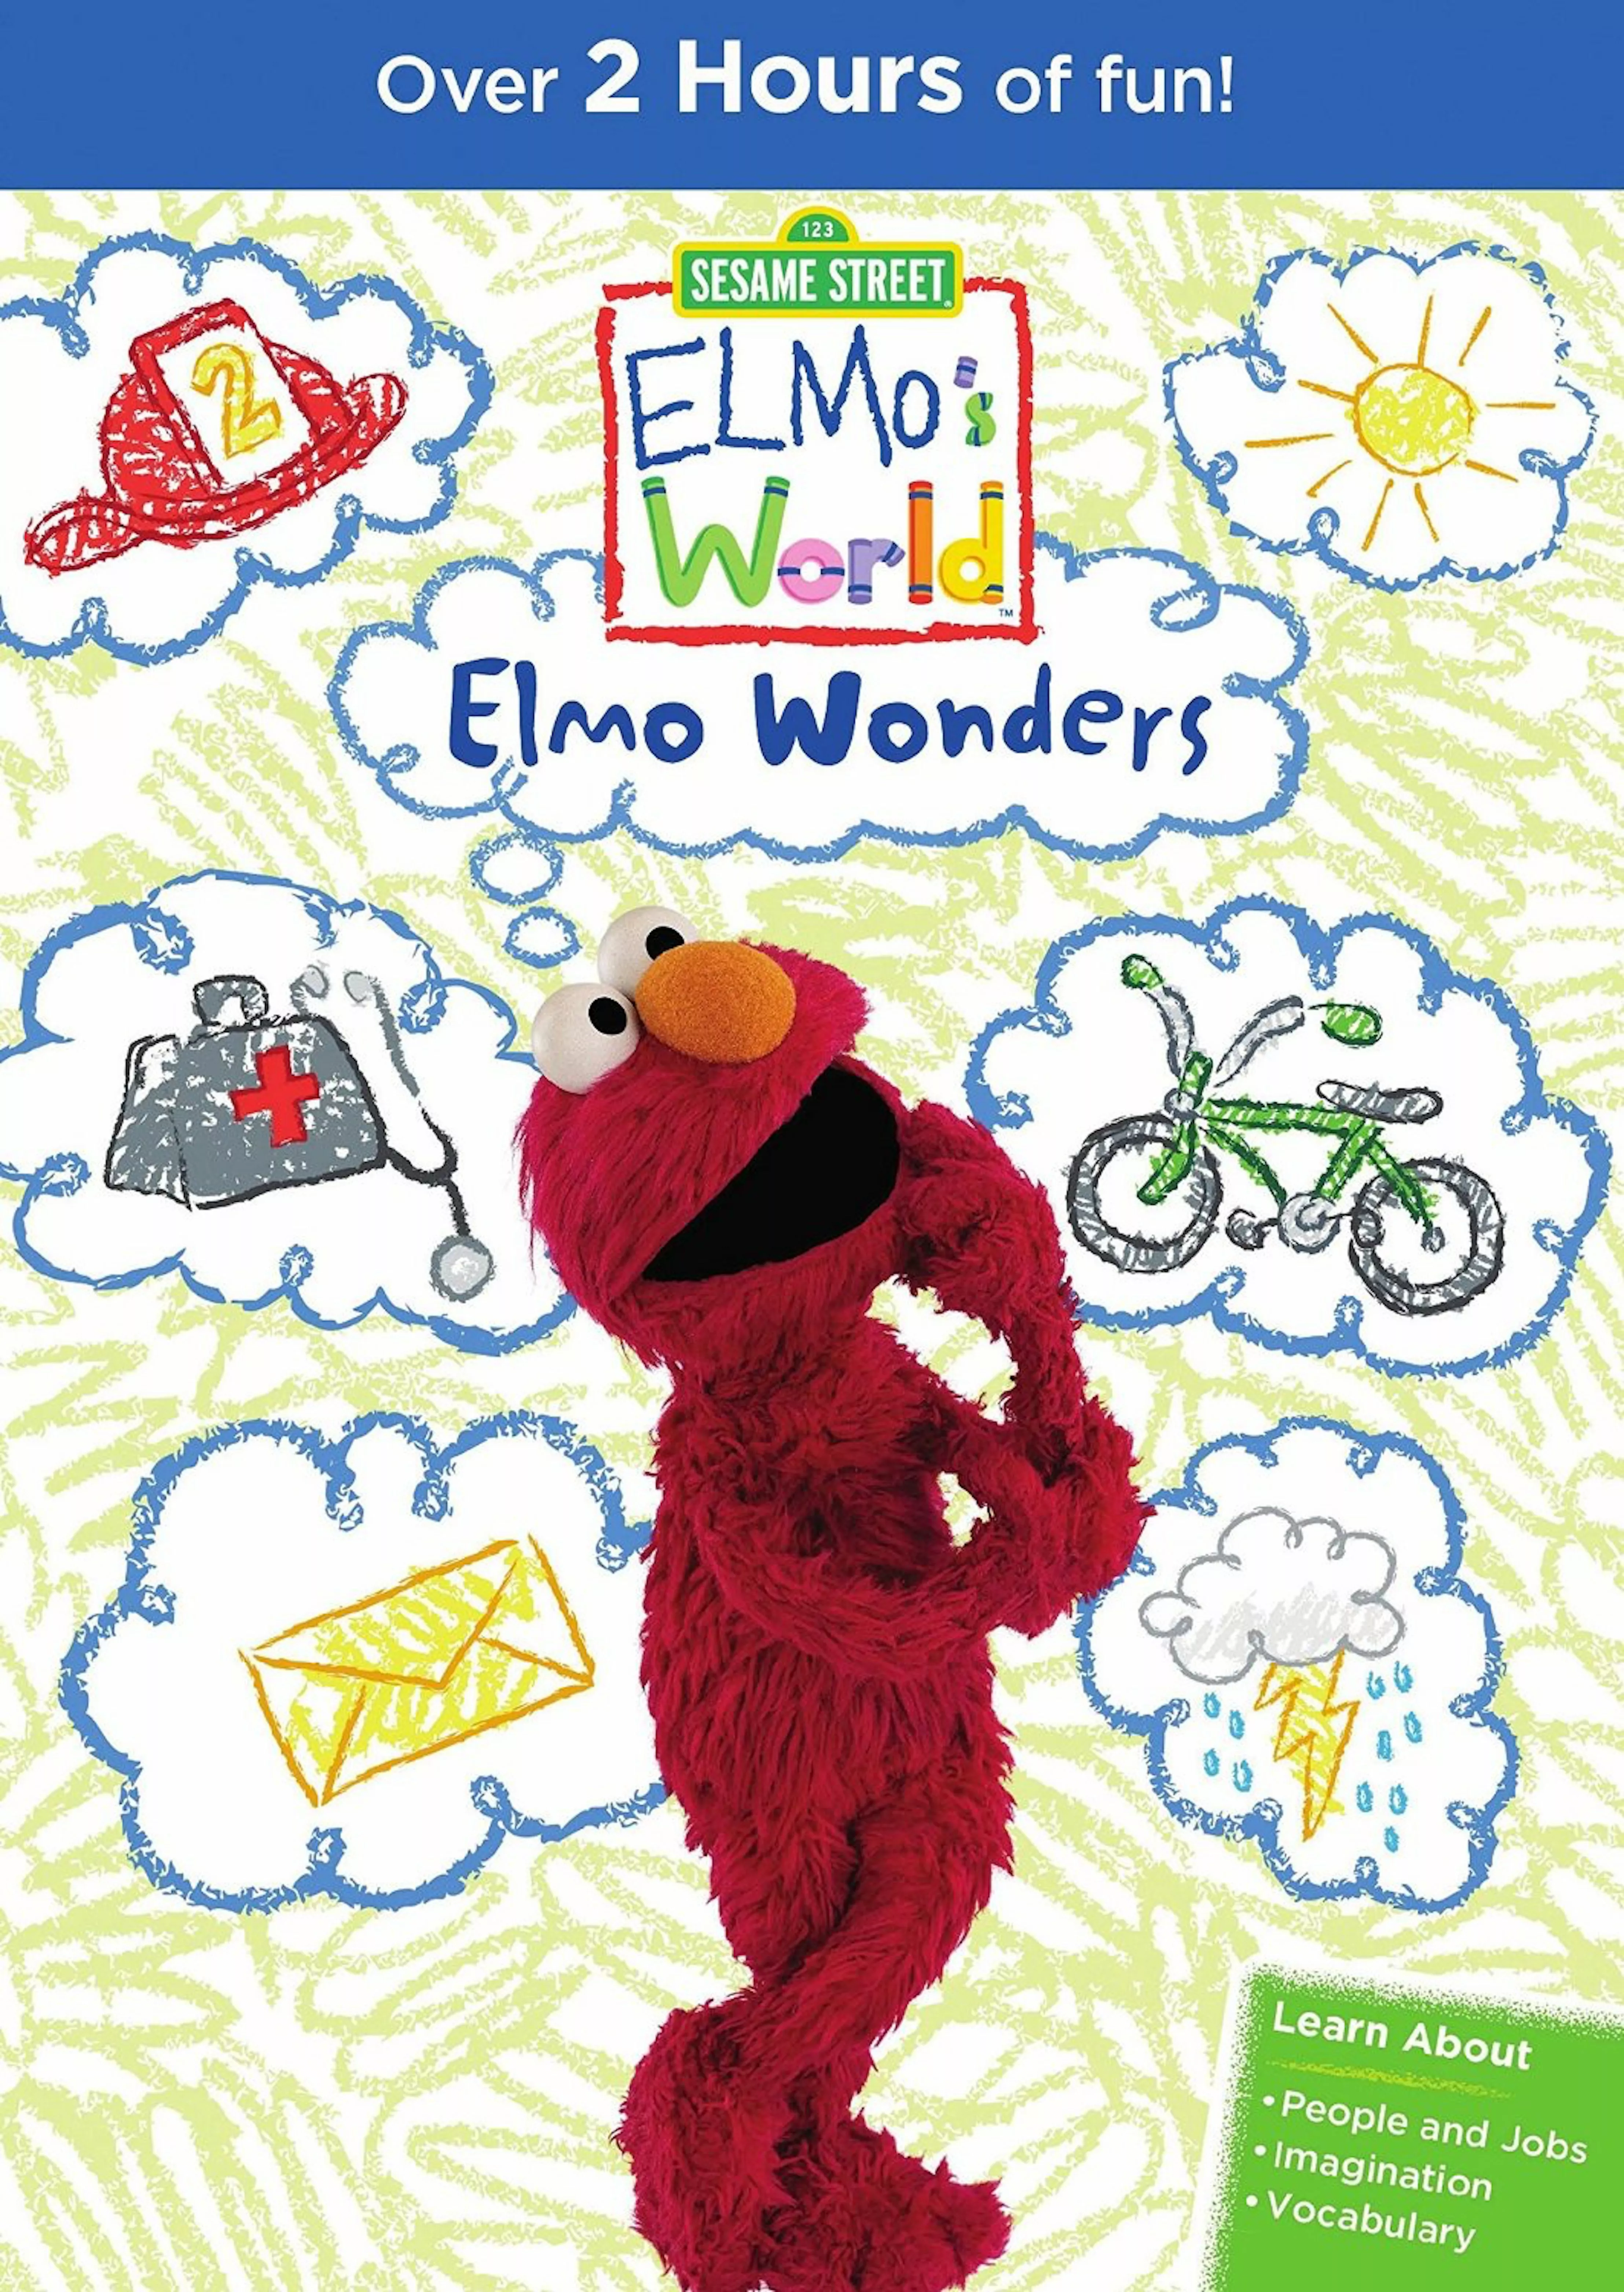 EW-ElmoWonders_72DPI.jpg